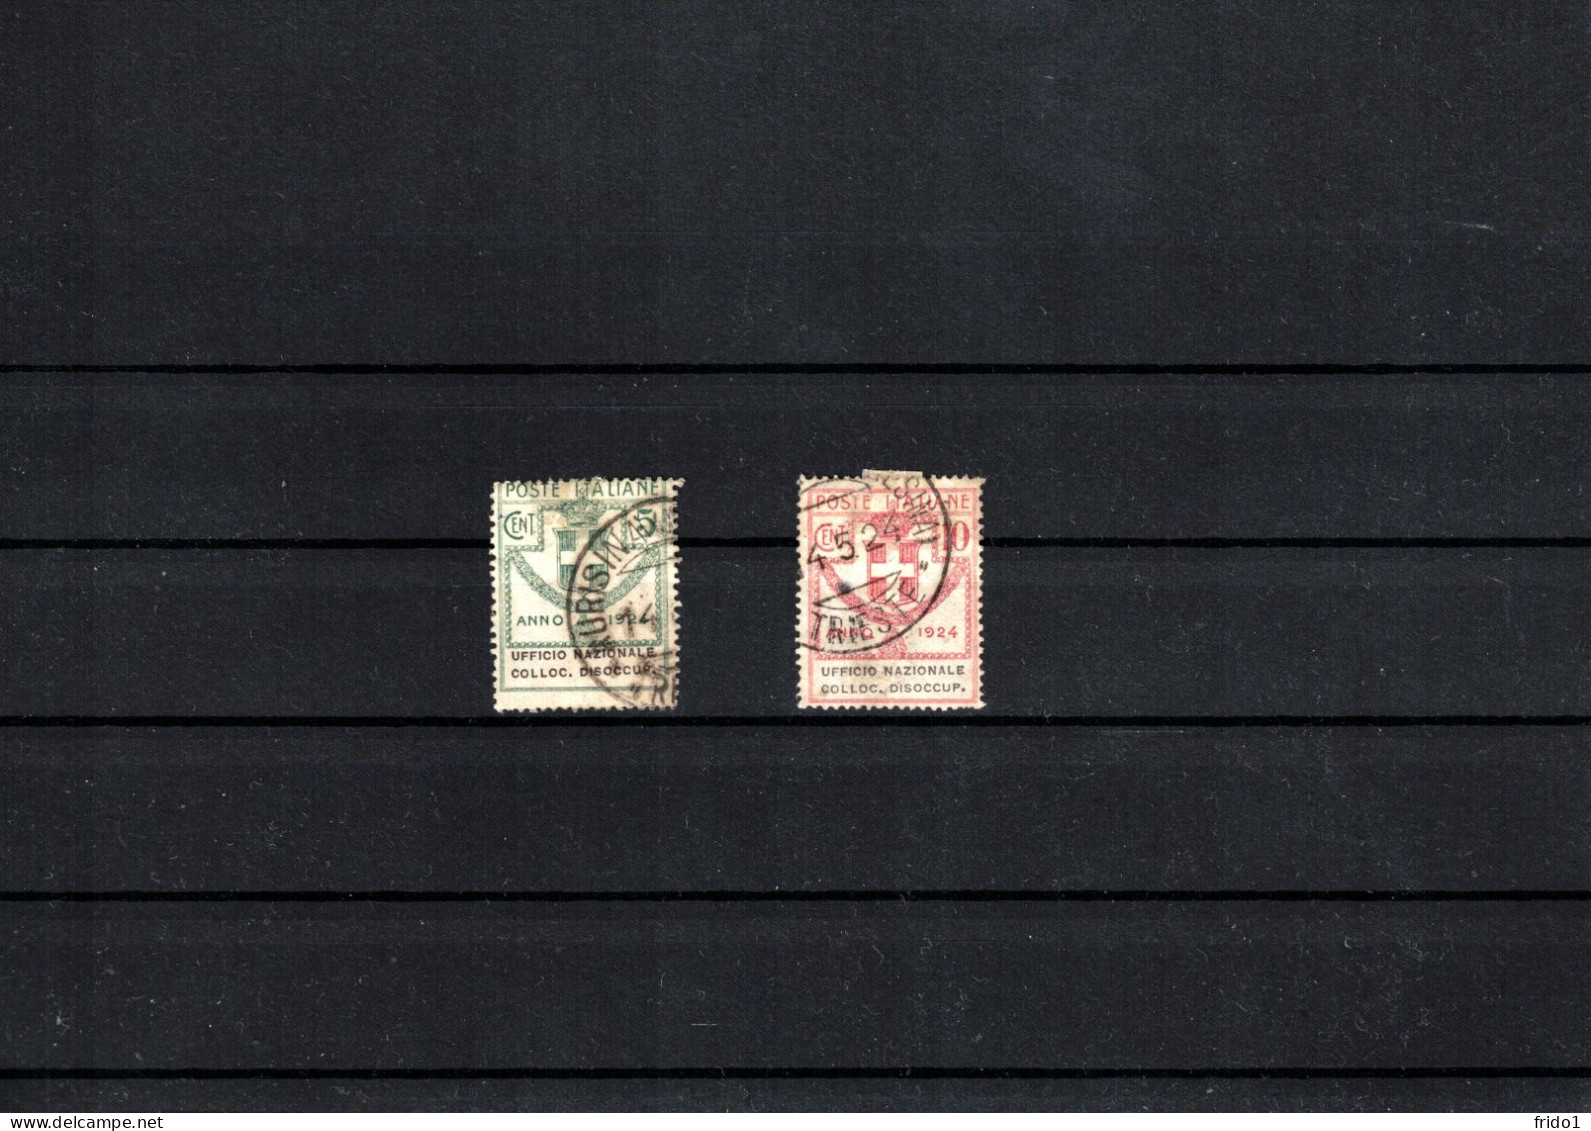 Italy / Italia 1924 Semi-State Stamps - Ufficio Nazionale Colloc. Dissocup. Fine Used - Gebraucht